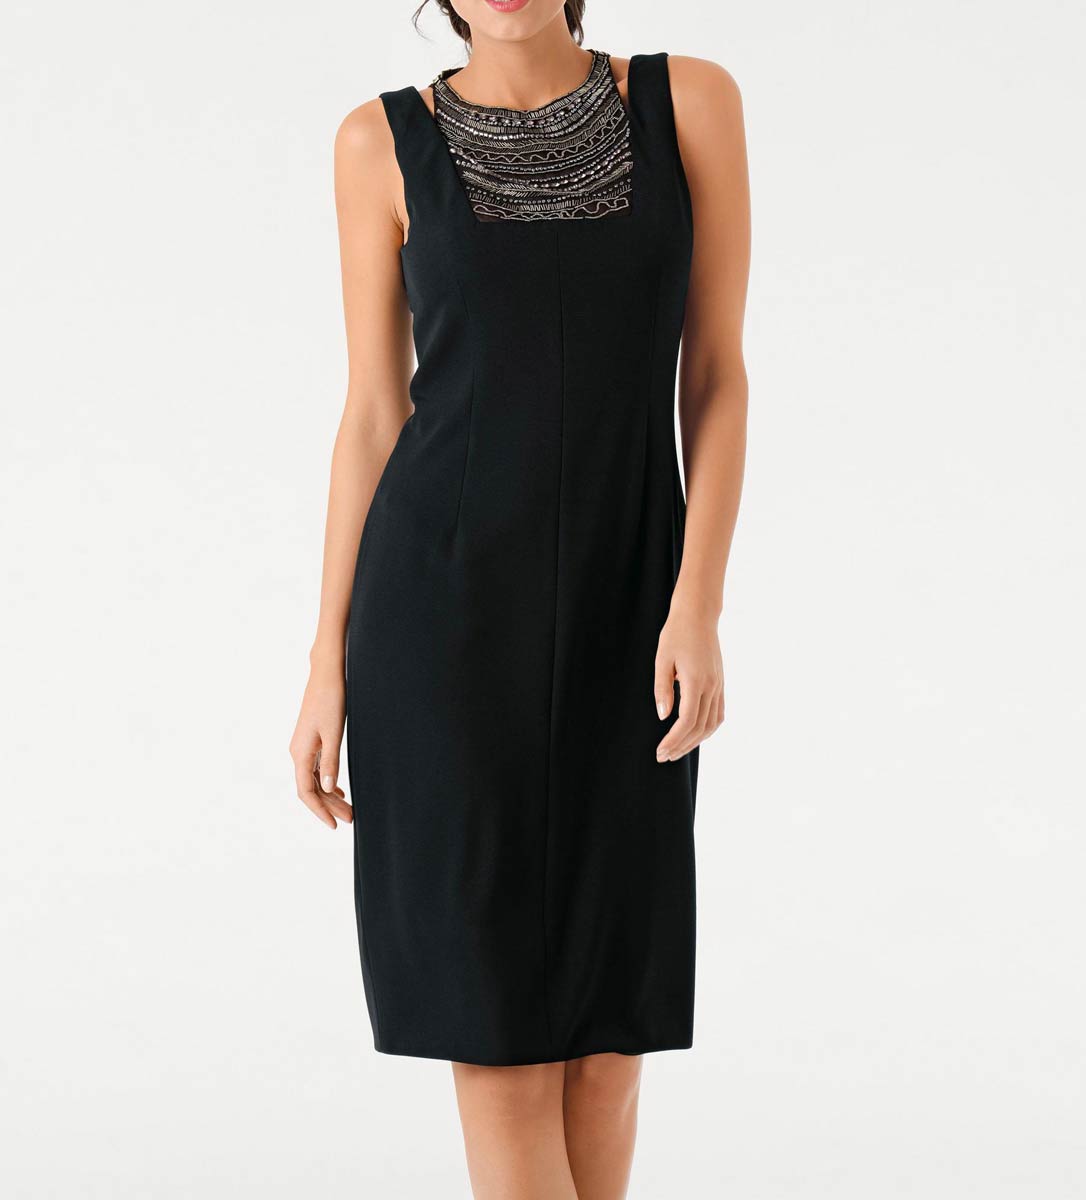 Ashley Brooke Damen Designer-Kleid mit Perlen-Dekolleté, schwarz